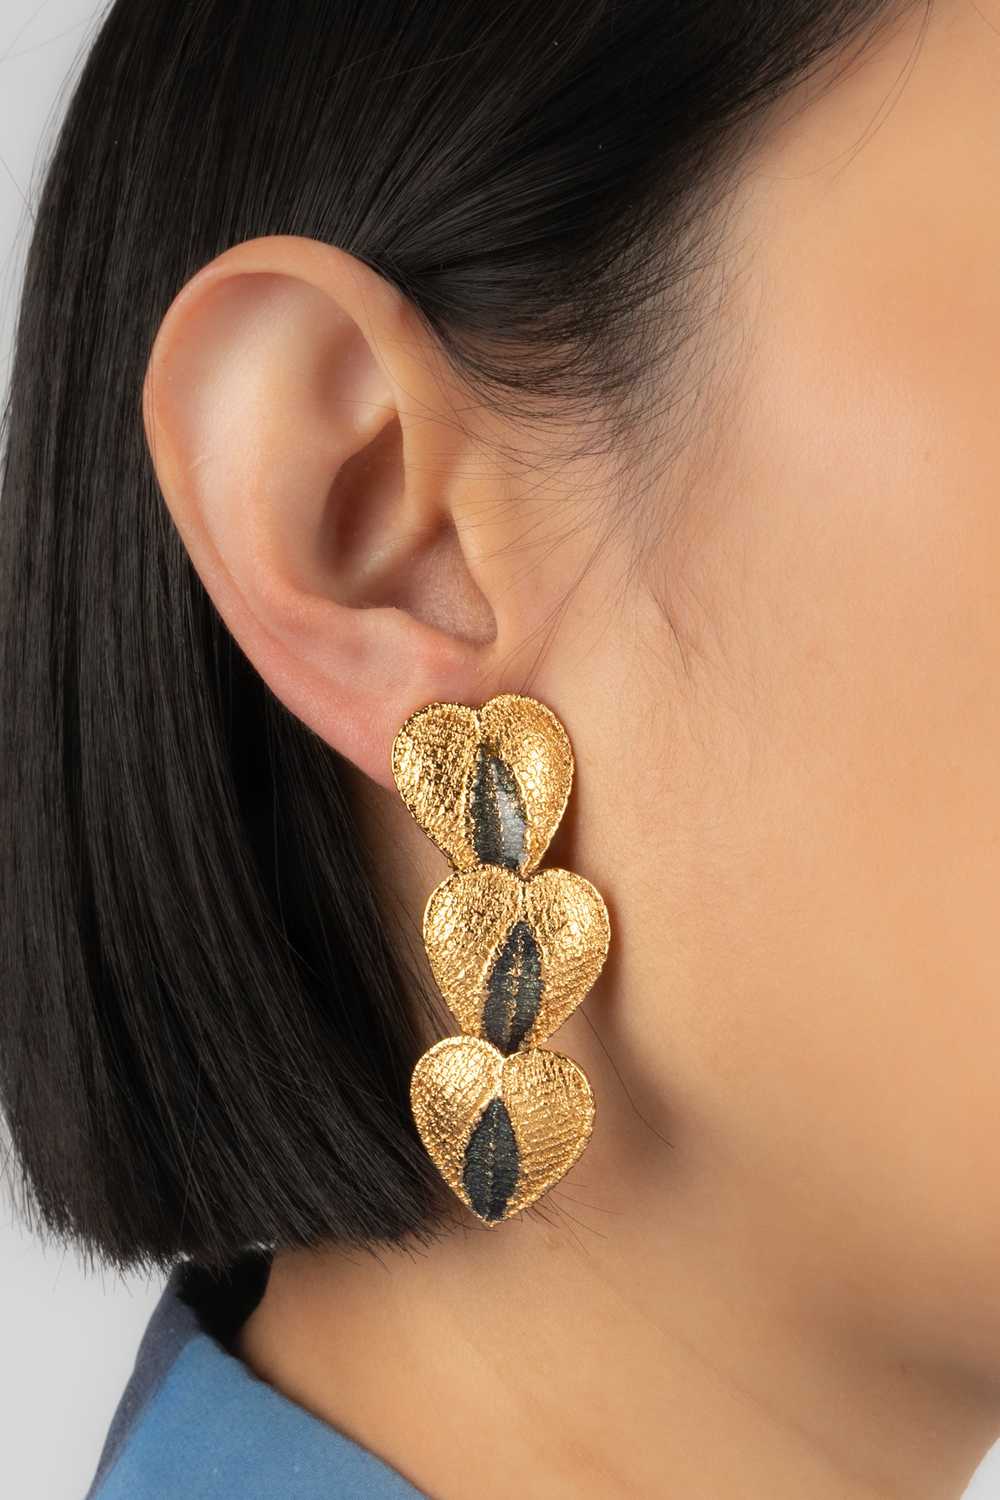 Yves Saint Laurent heart earrings - image 3